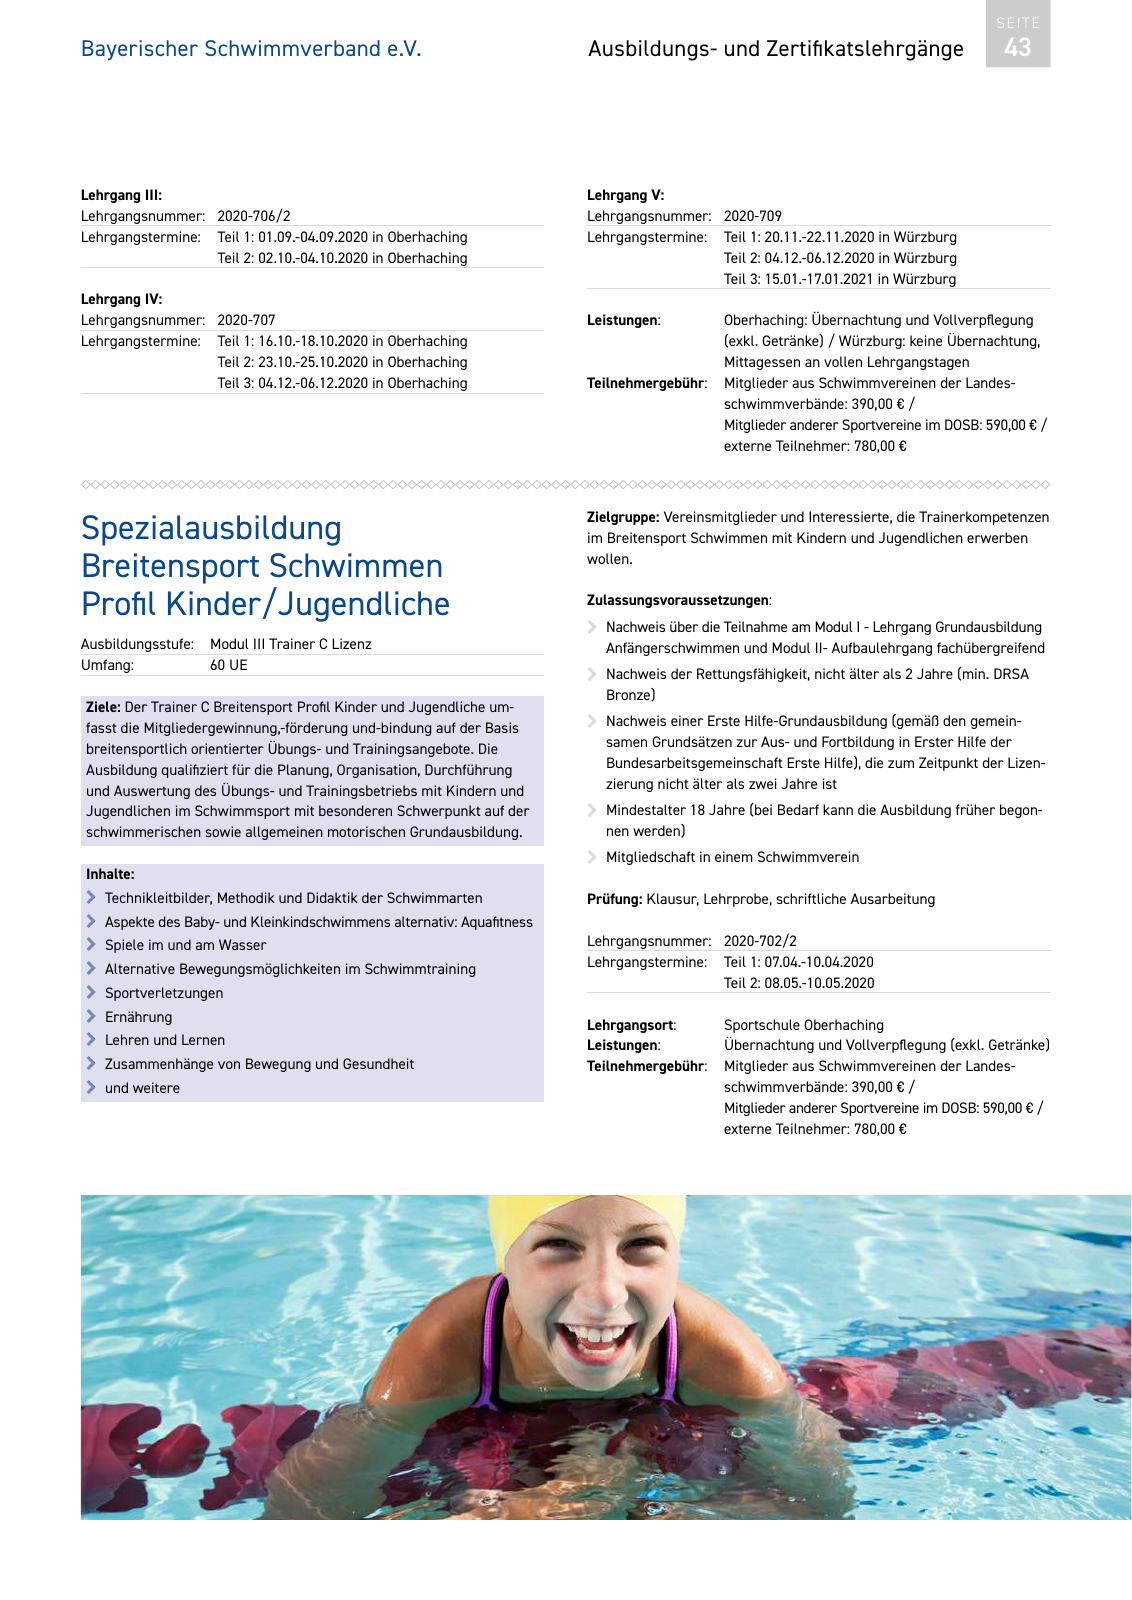 Vorschau Lehrgänge 2020 // Akademie des Schwimmsports Seite 43